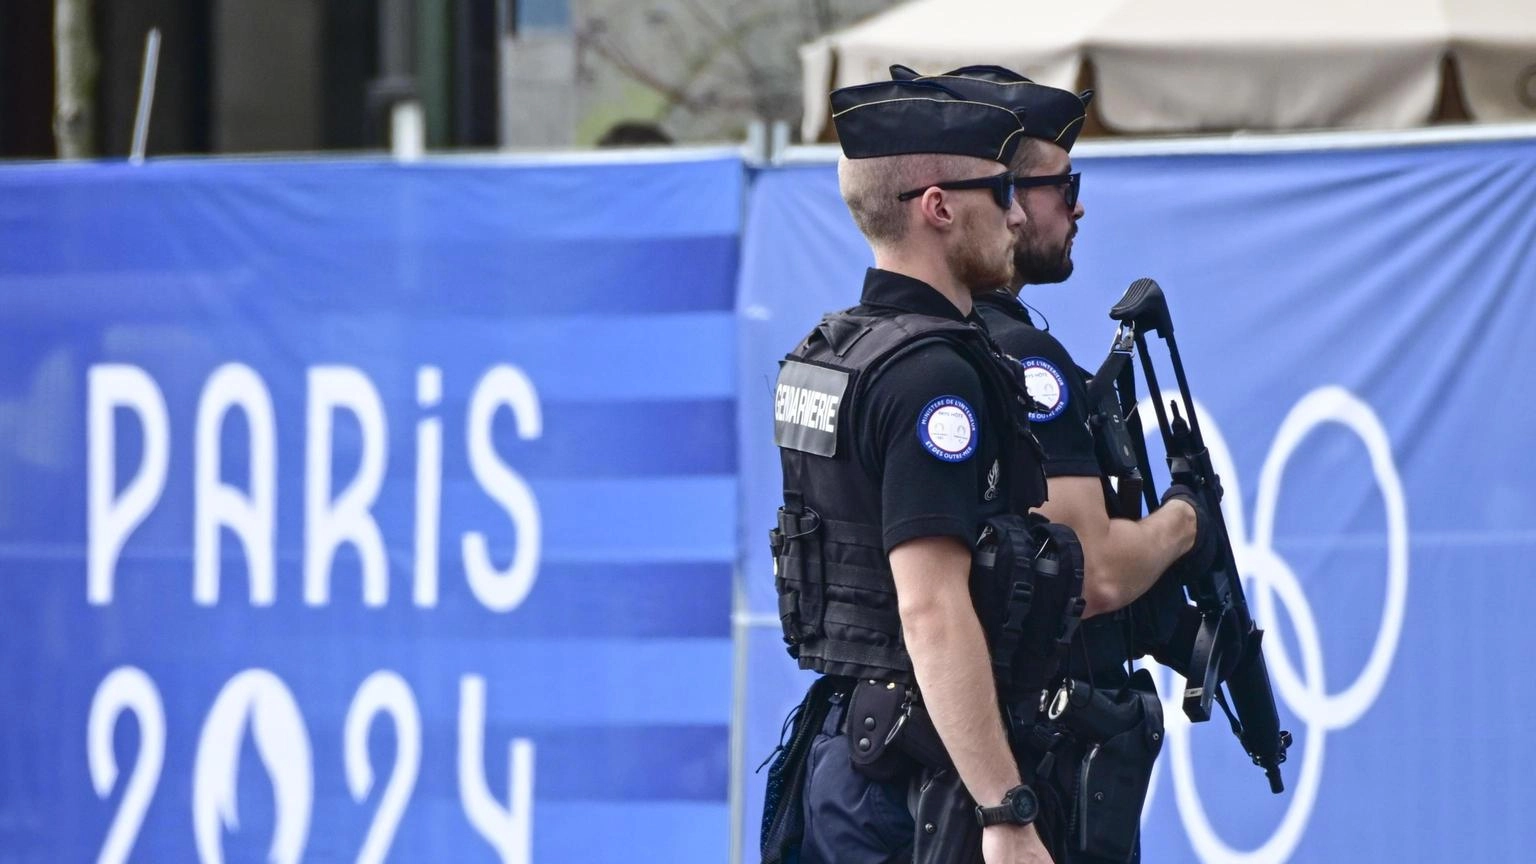 Massiccio attacco a Alta Velocità in Francia, è sabotaggio